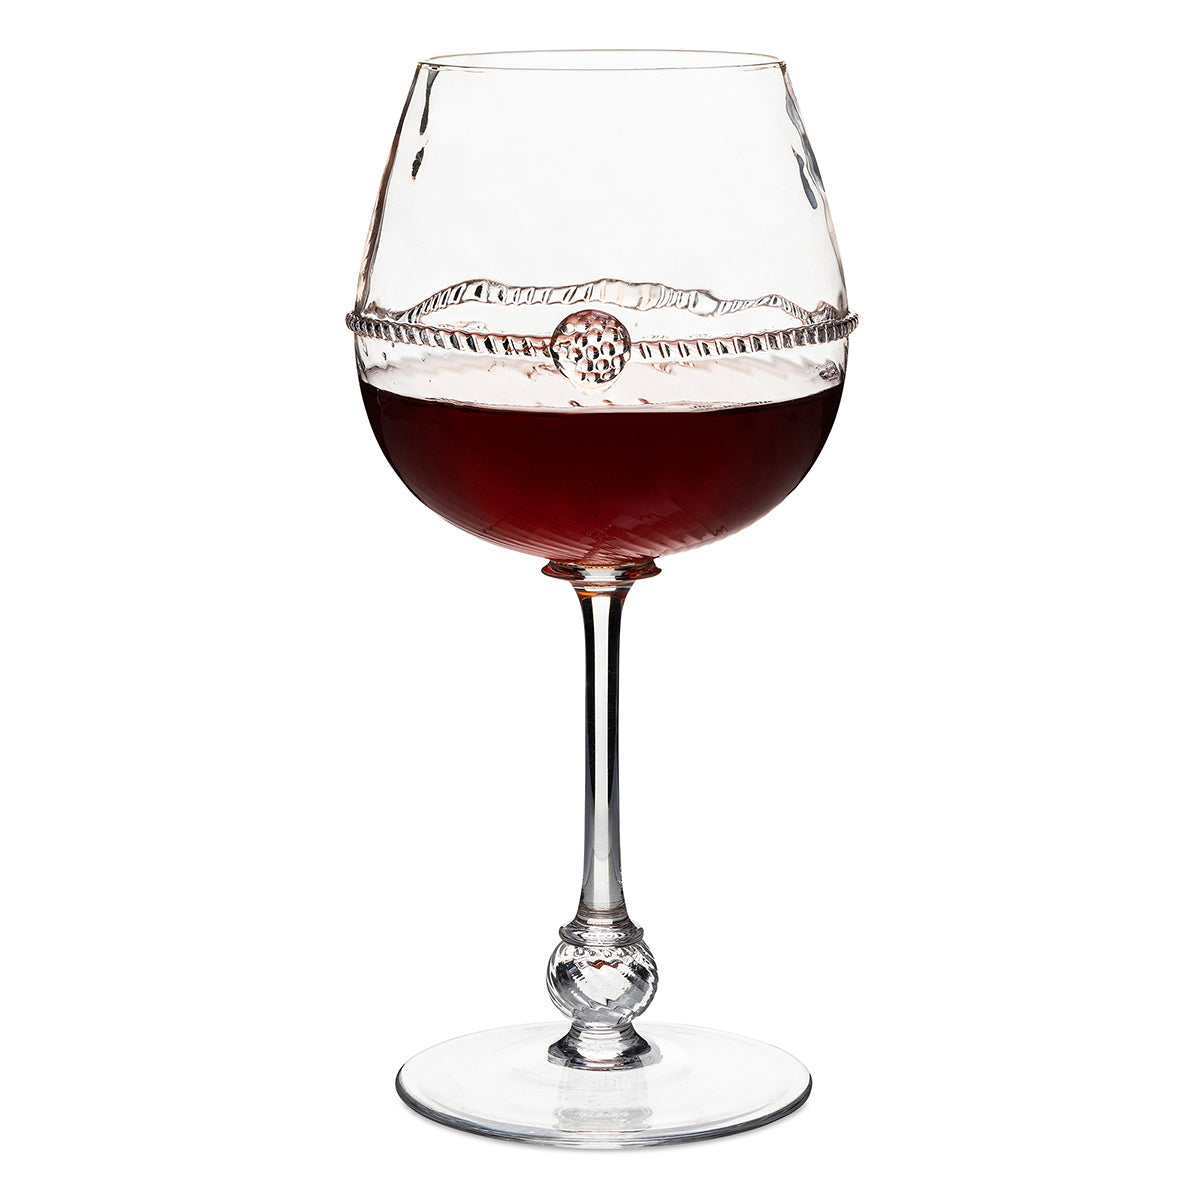 Graham Red Wine Glass